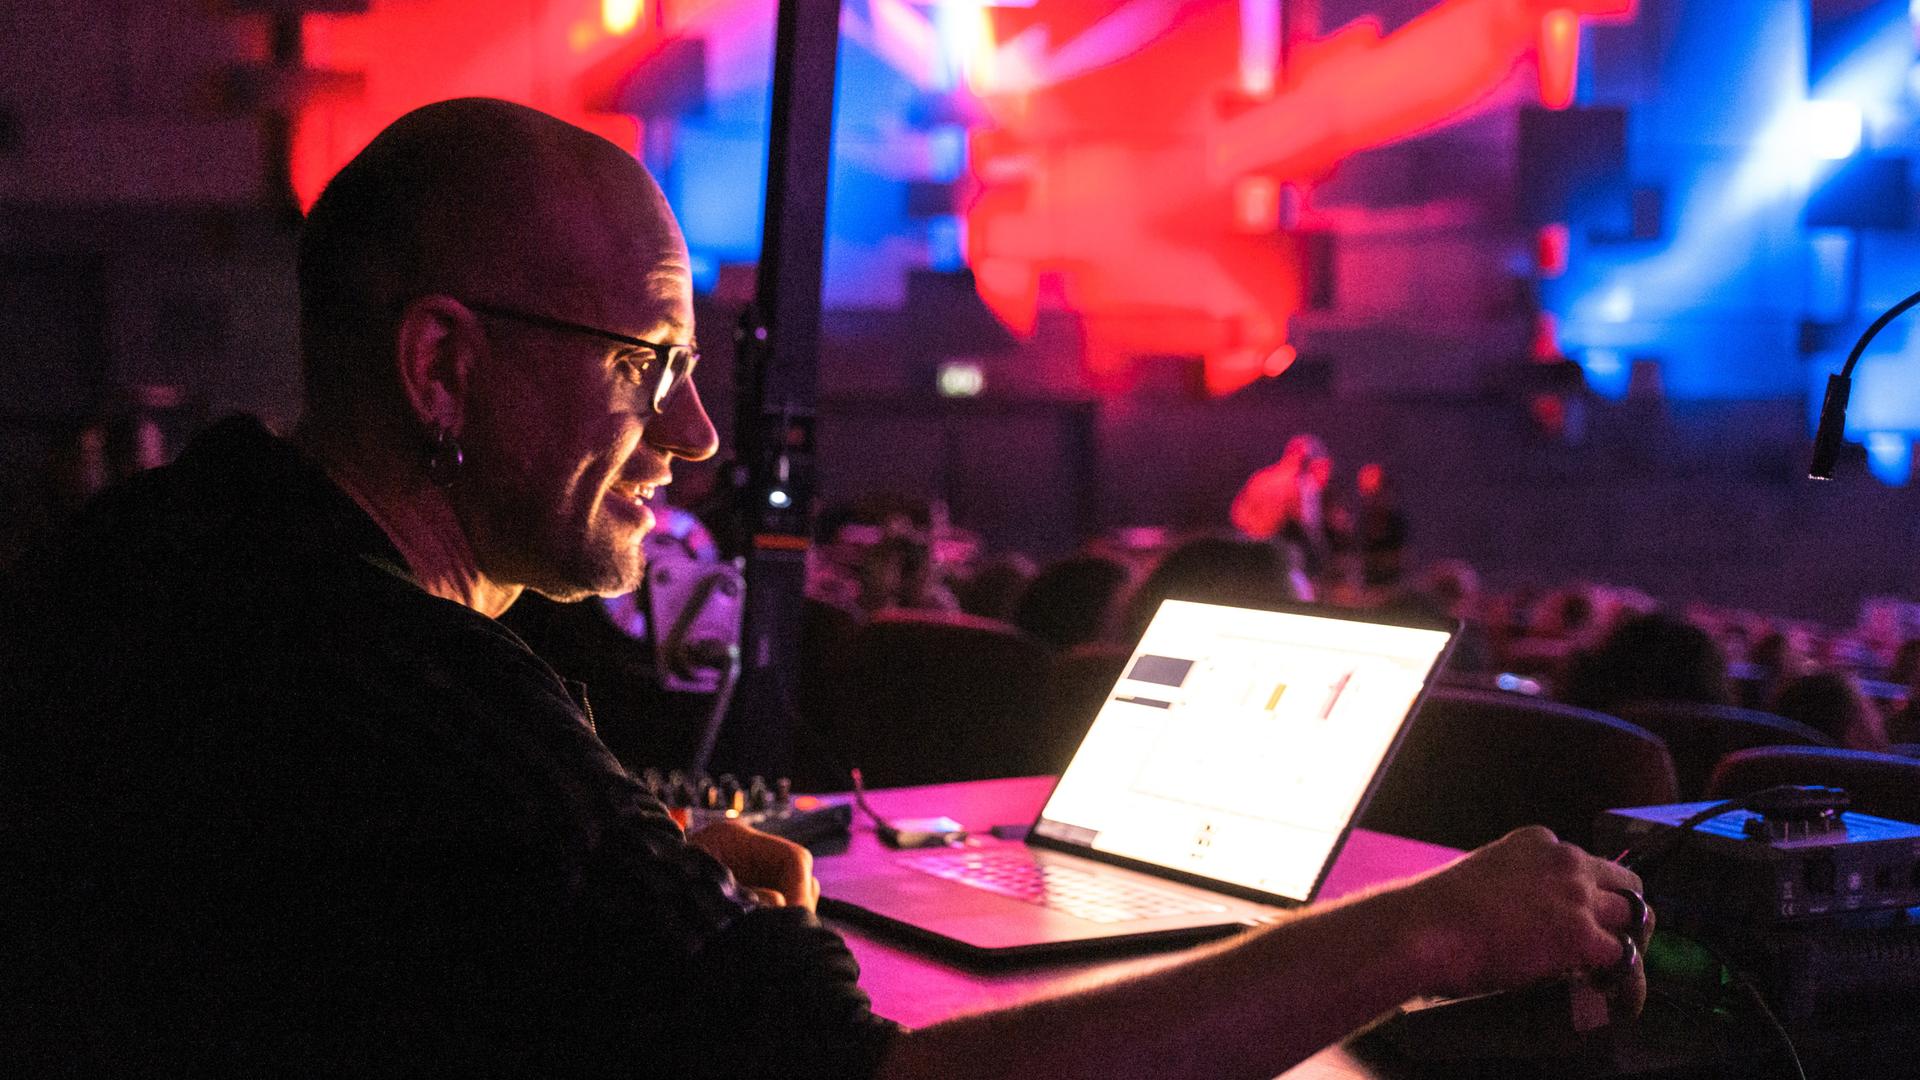 Der Medienkünstler Robert Henke schaut konzentriert auf einen Laptop und dreht an Reglern, der ganze Raum ist in rotes und blaues Licht getaucht.